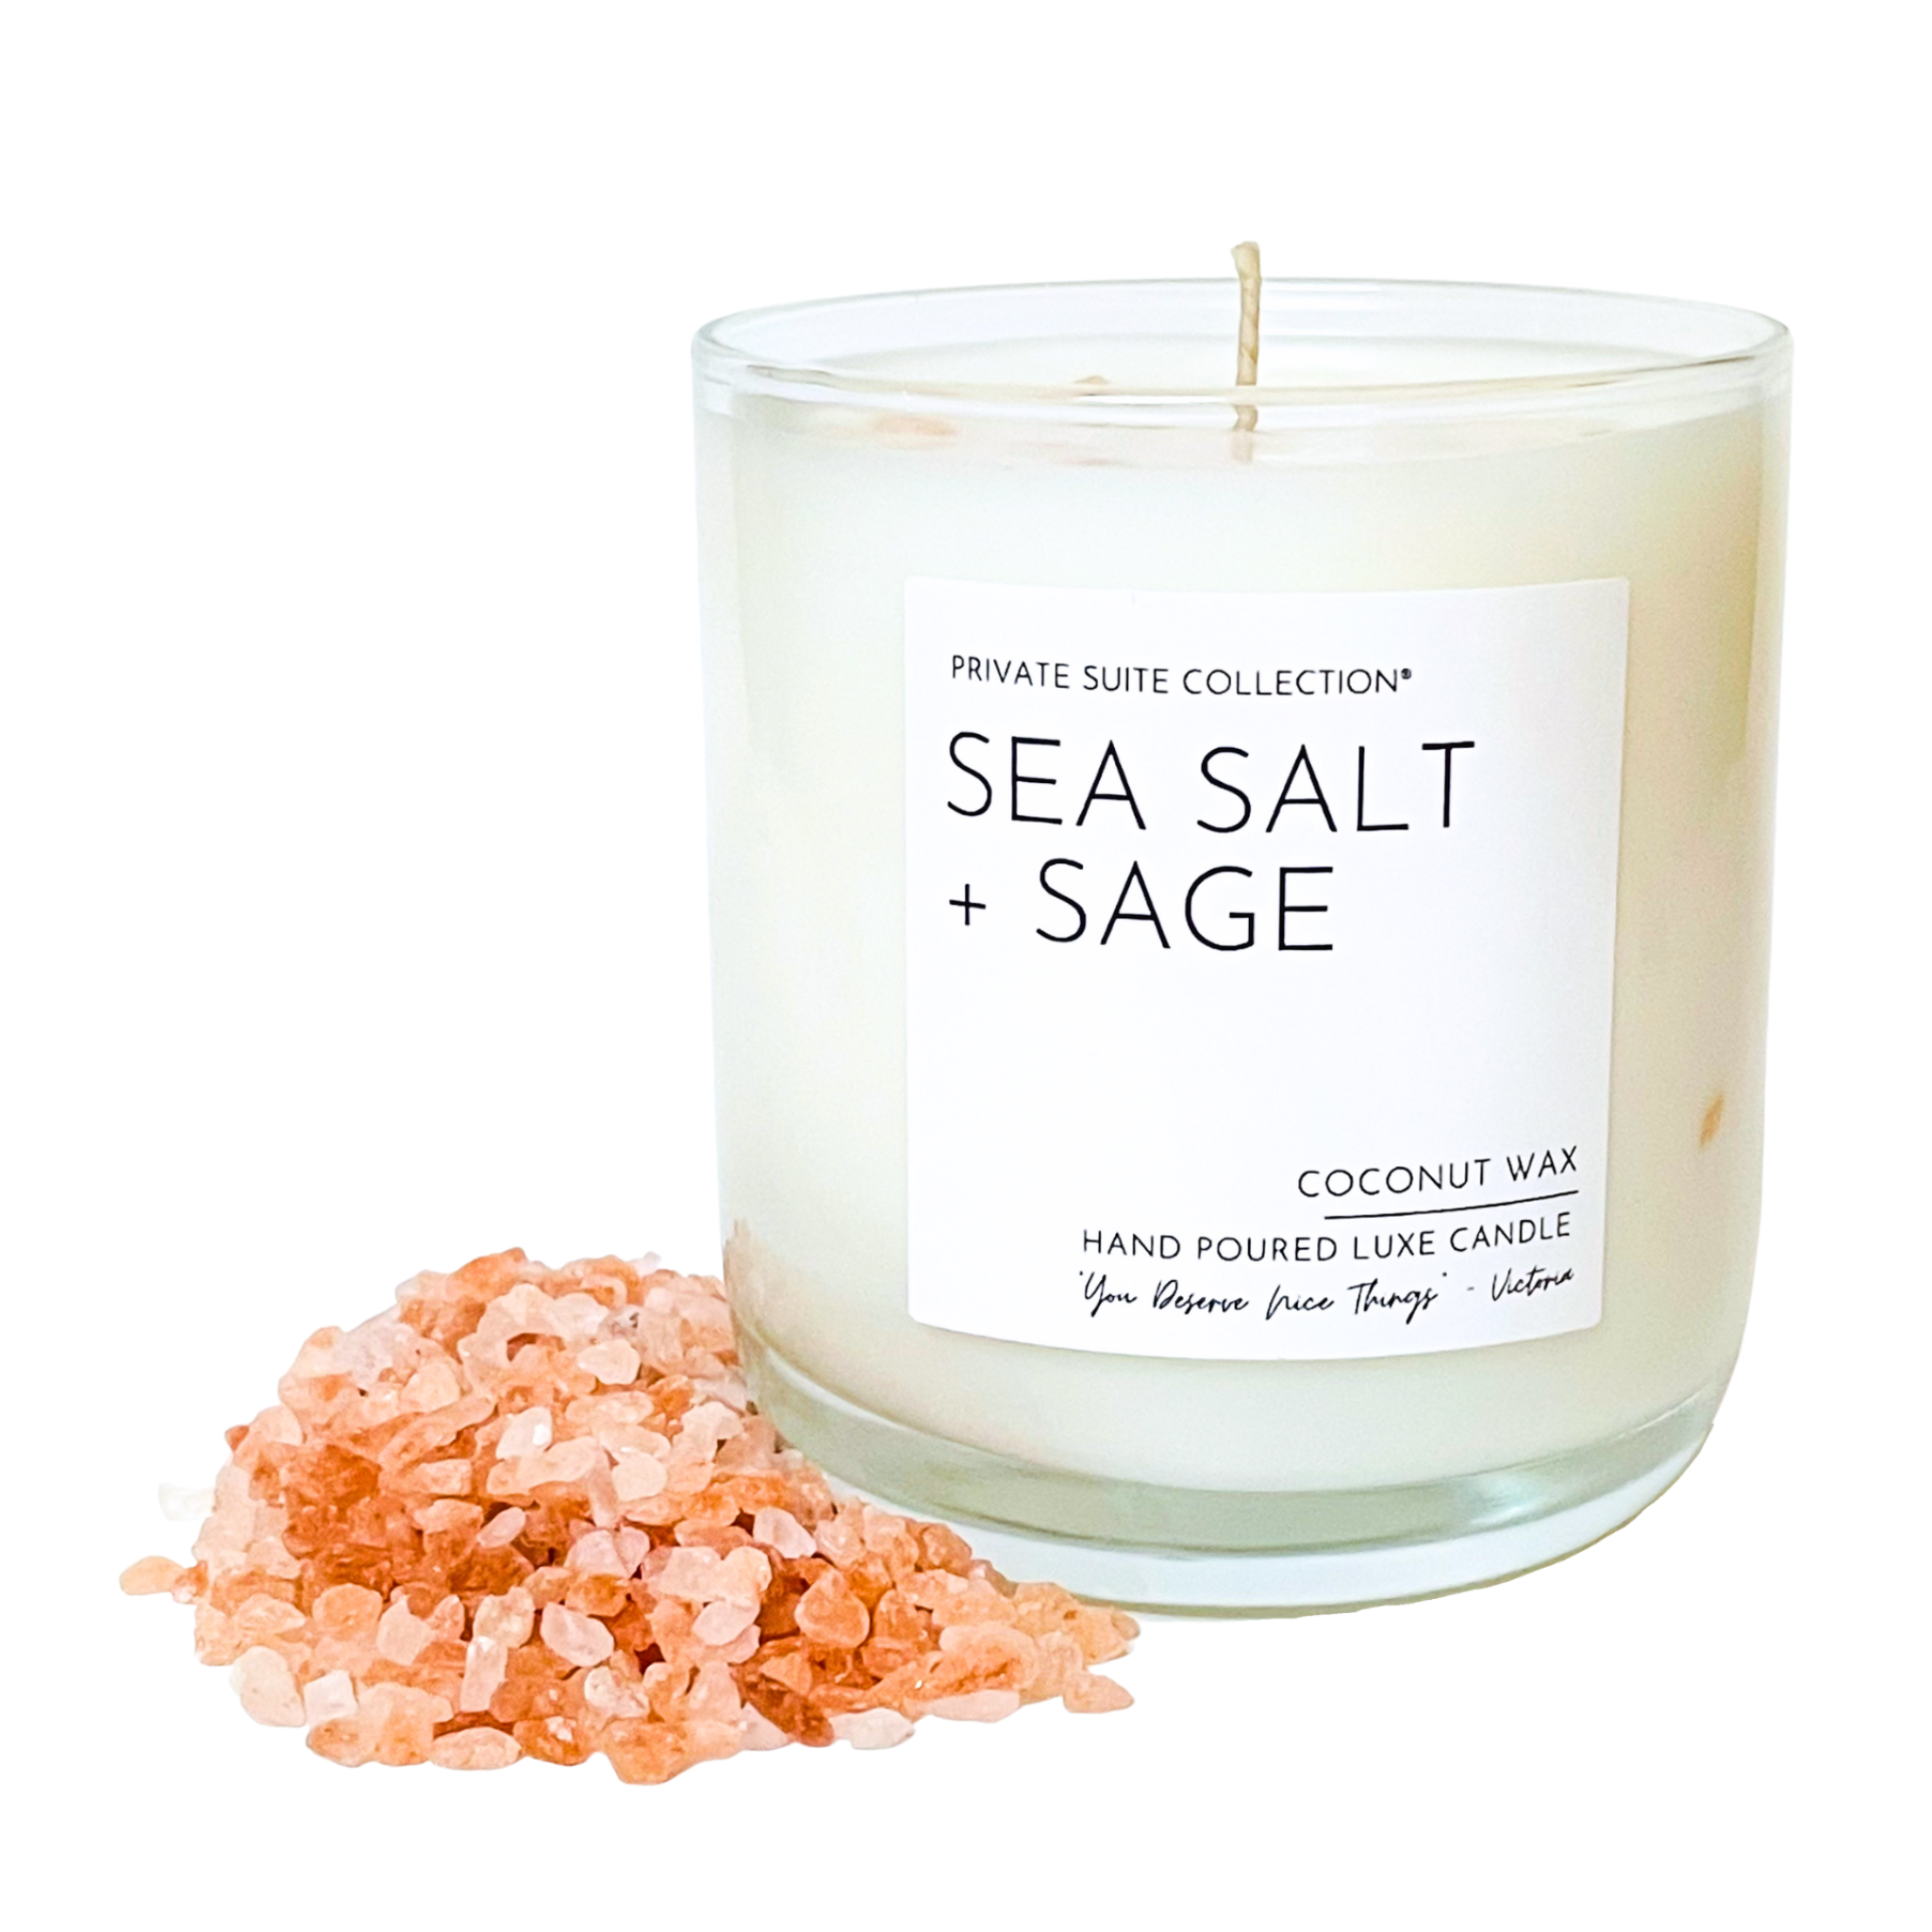 SEA SALT + SAGE